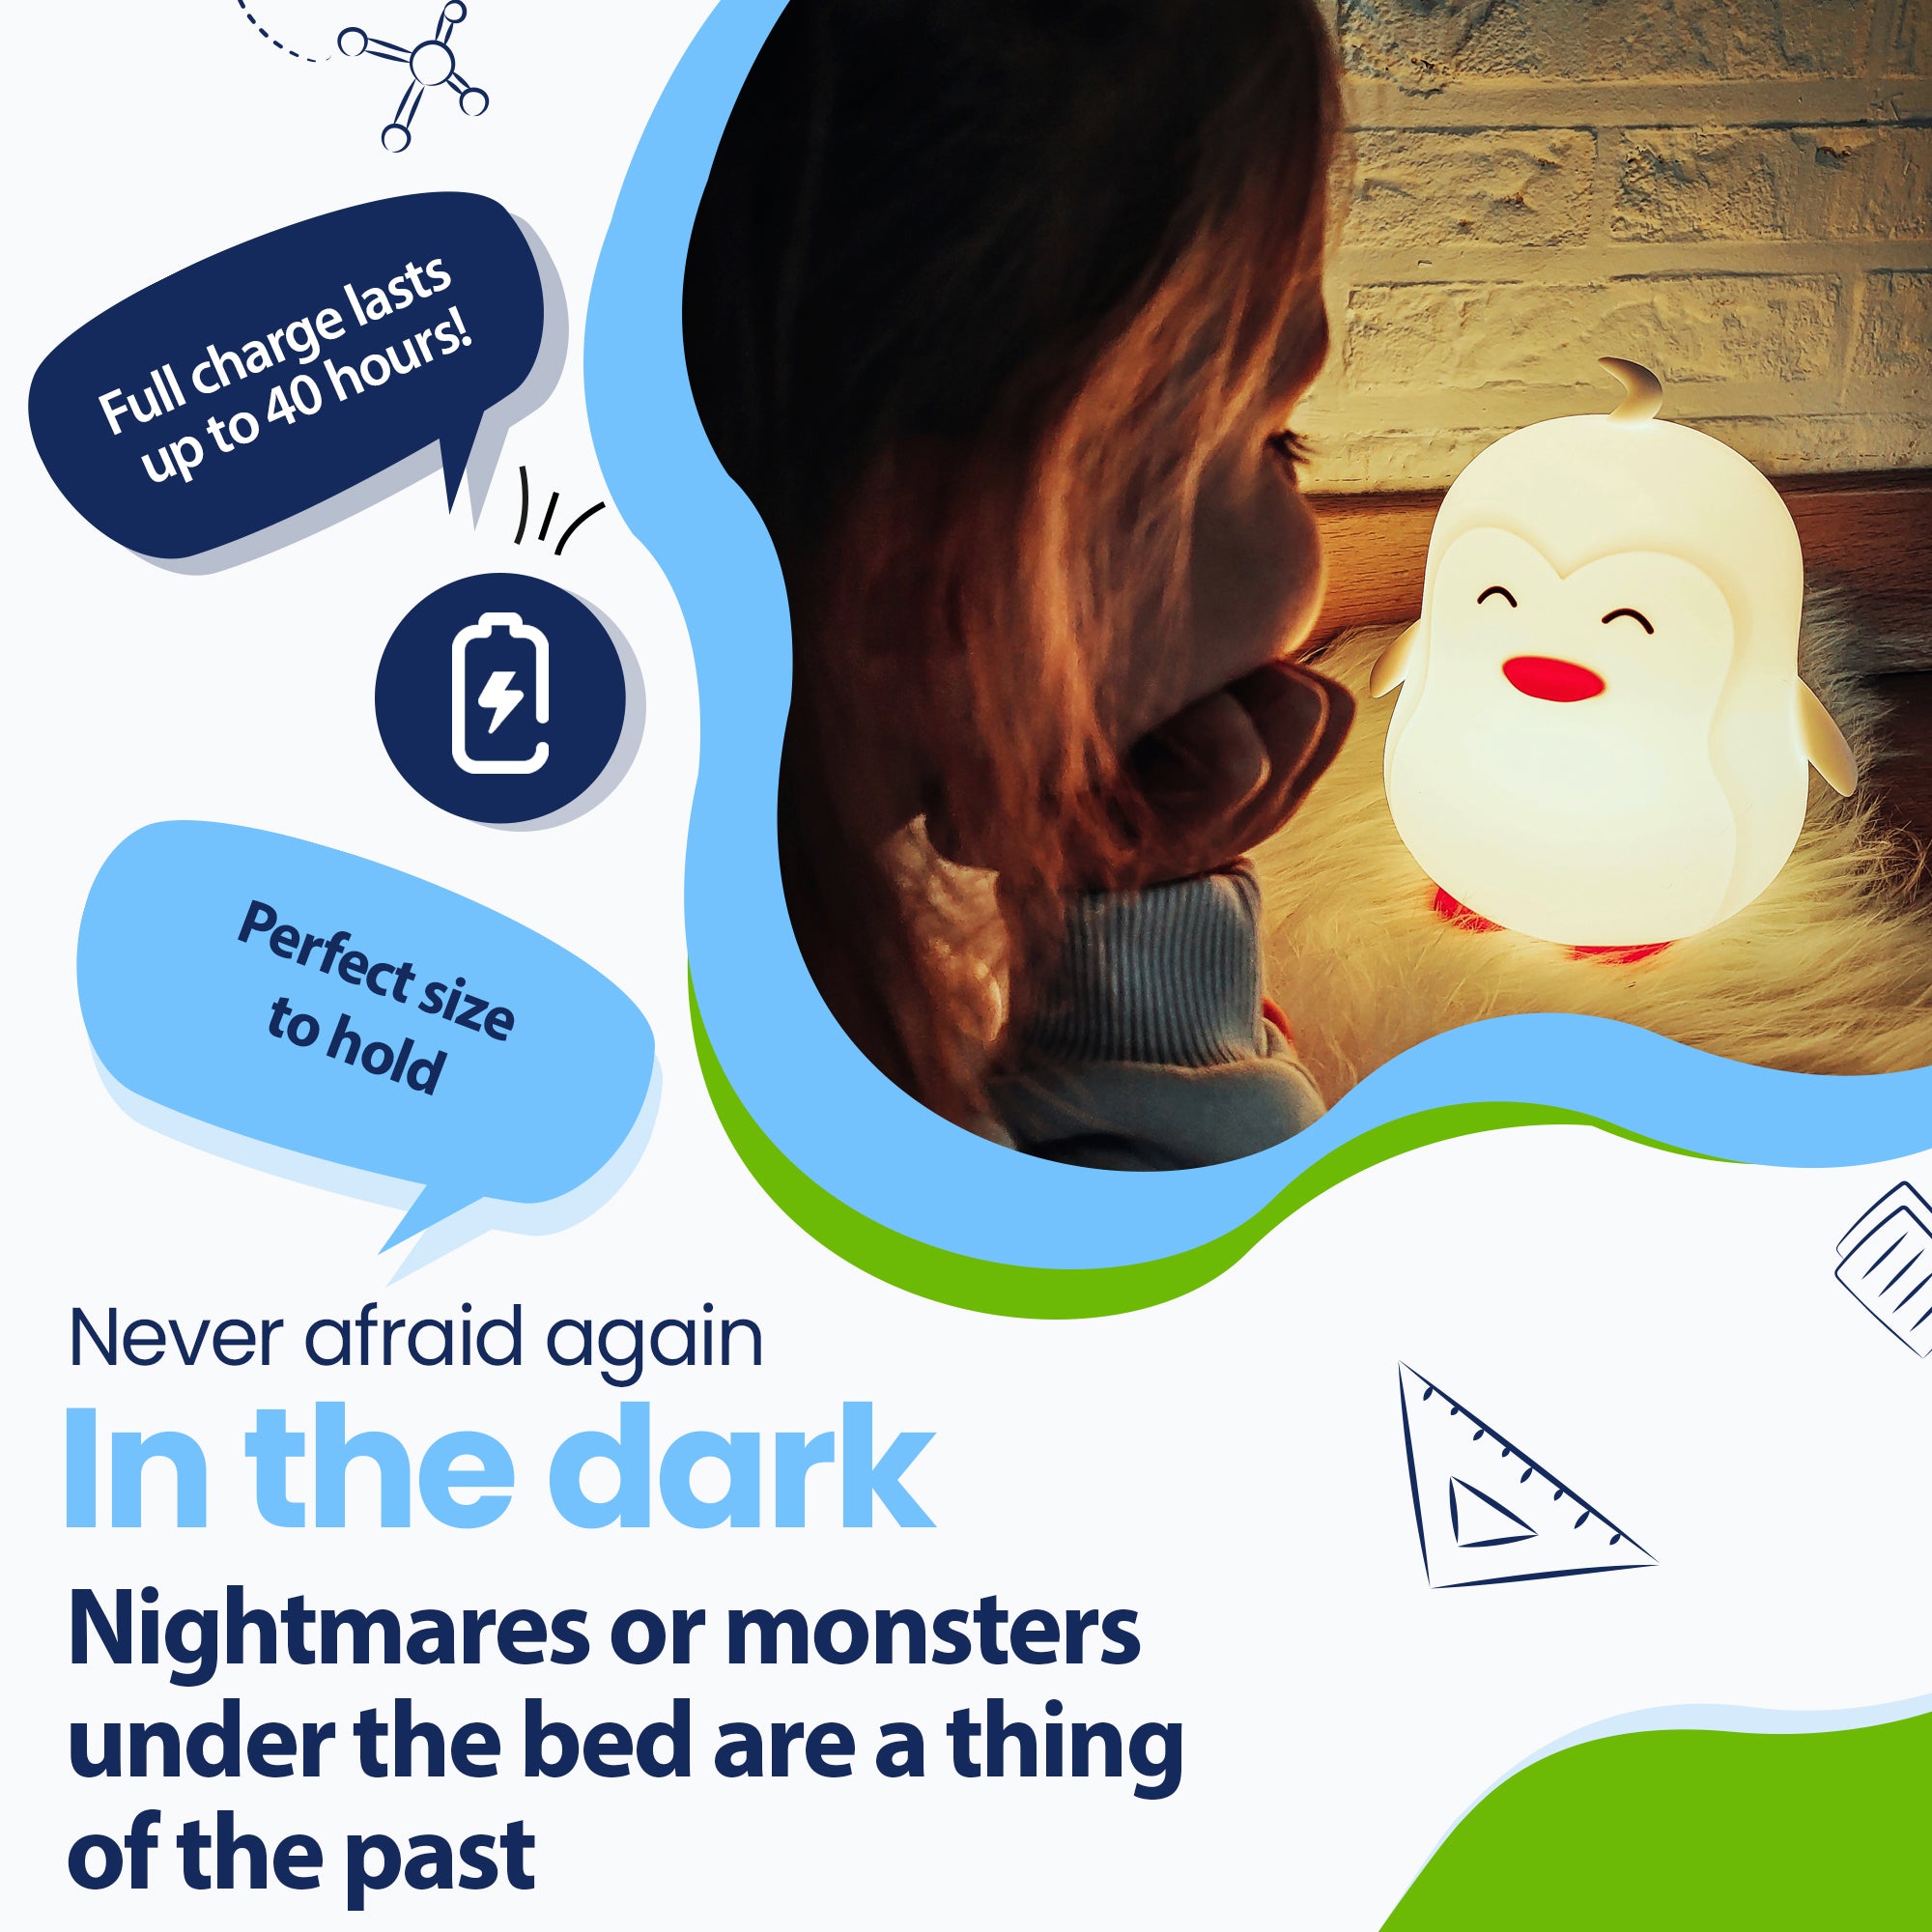 Vær aldrig bange for mørket igen - Mareridt eller monstre under sengen hører fortiden til - Holder op til 40 timer - Perfekt størrelse at holde